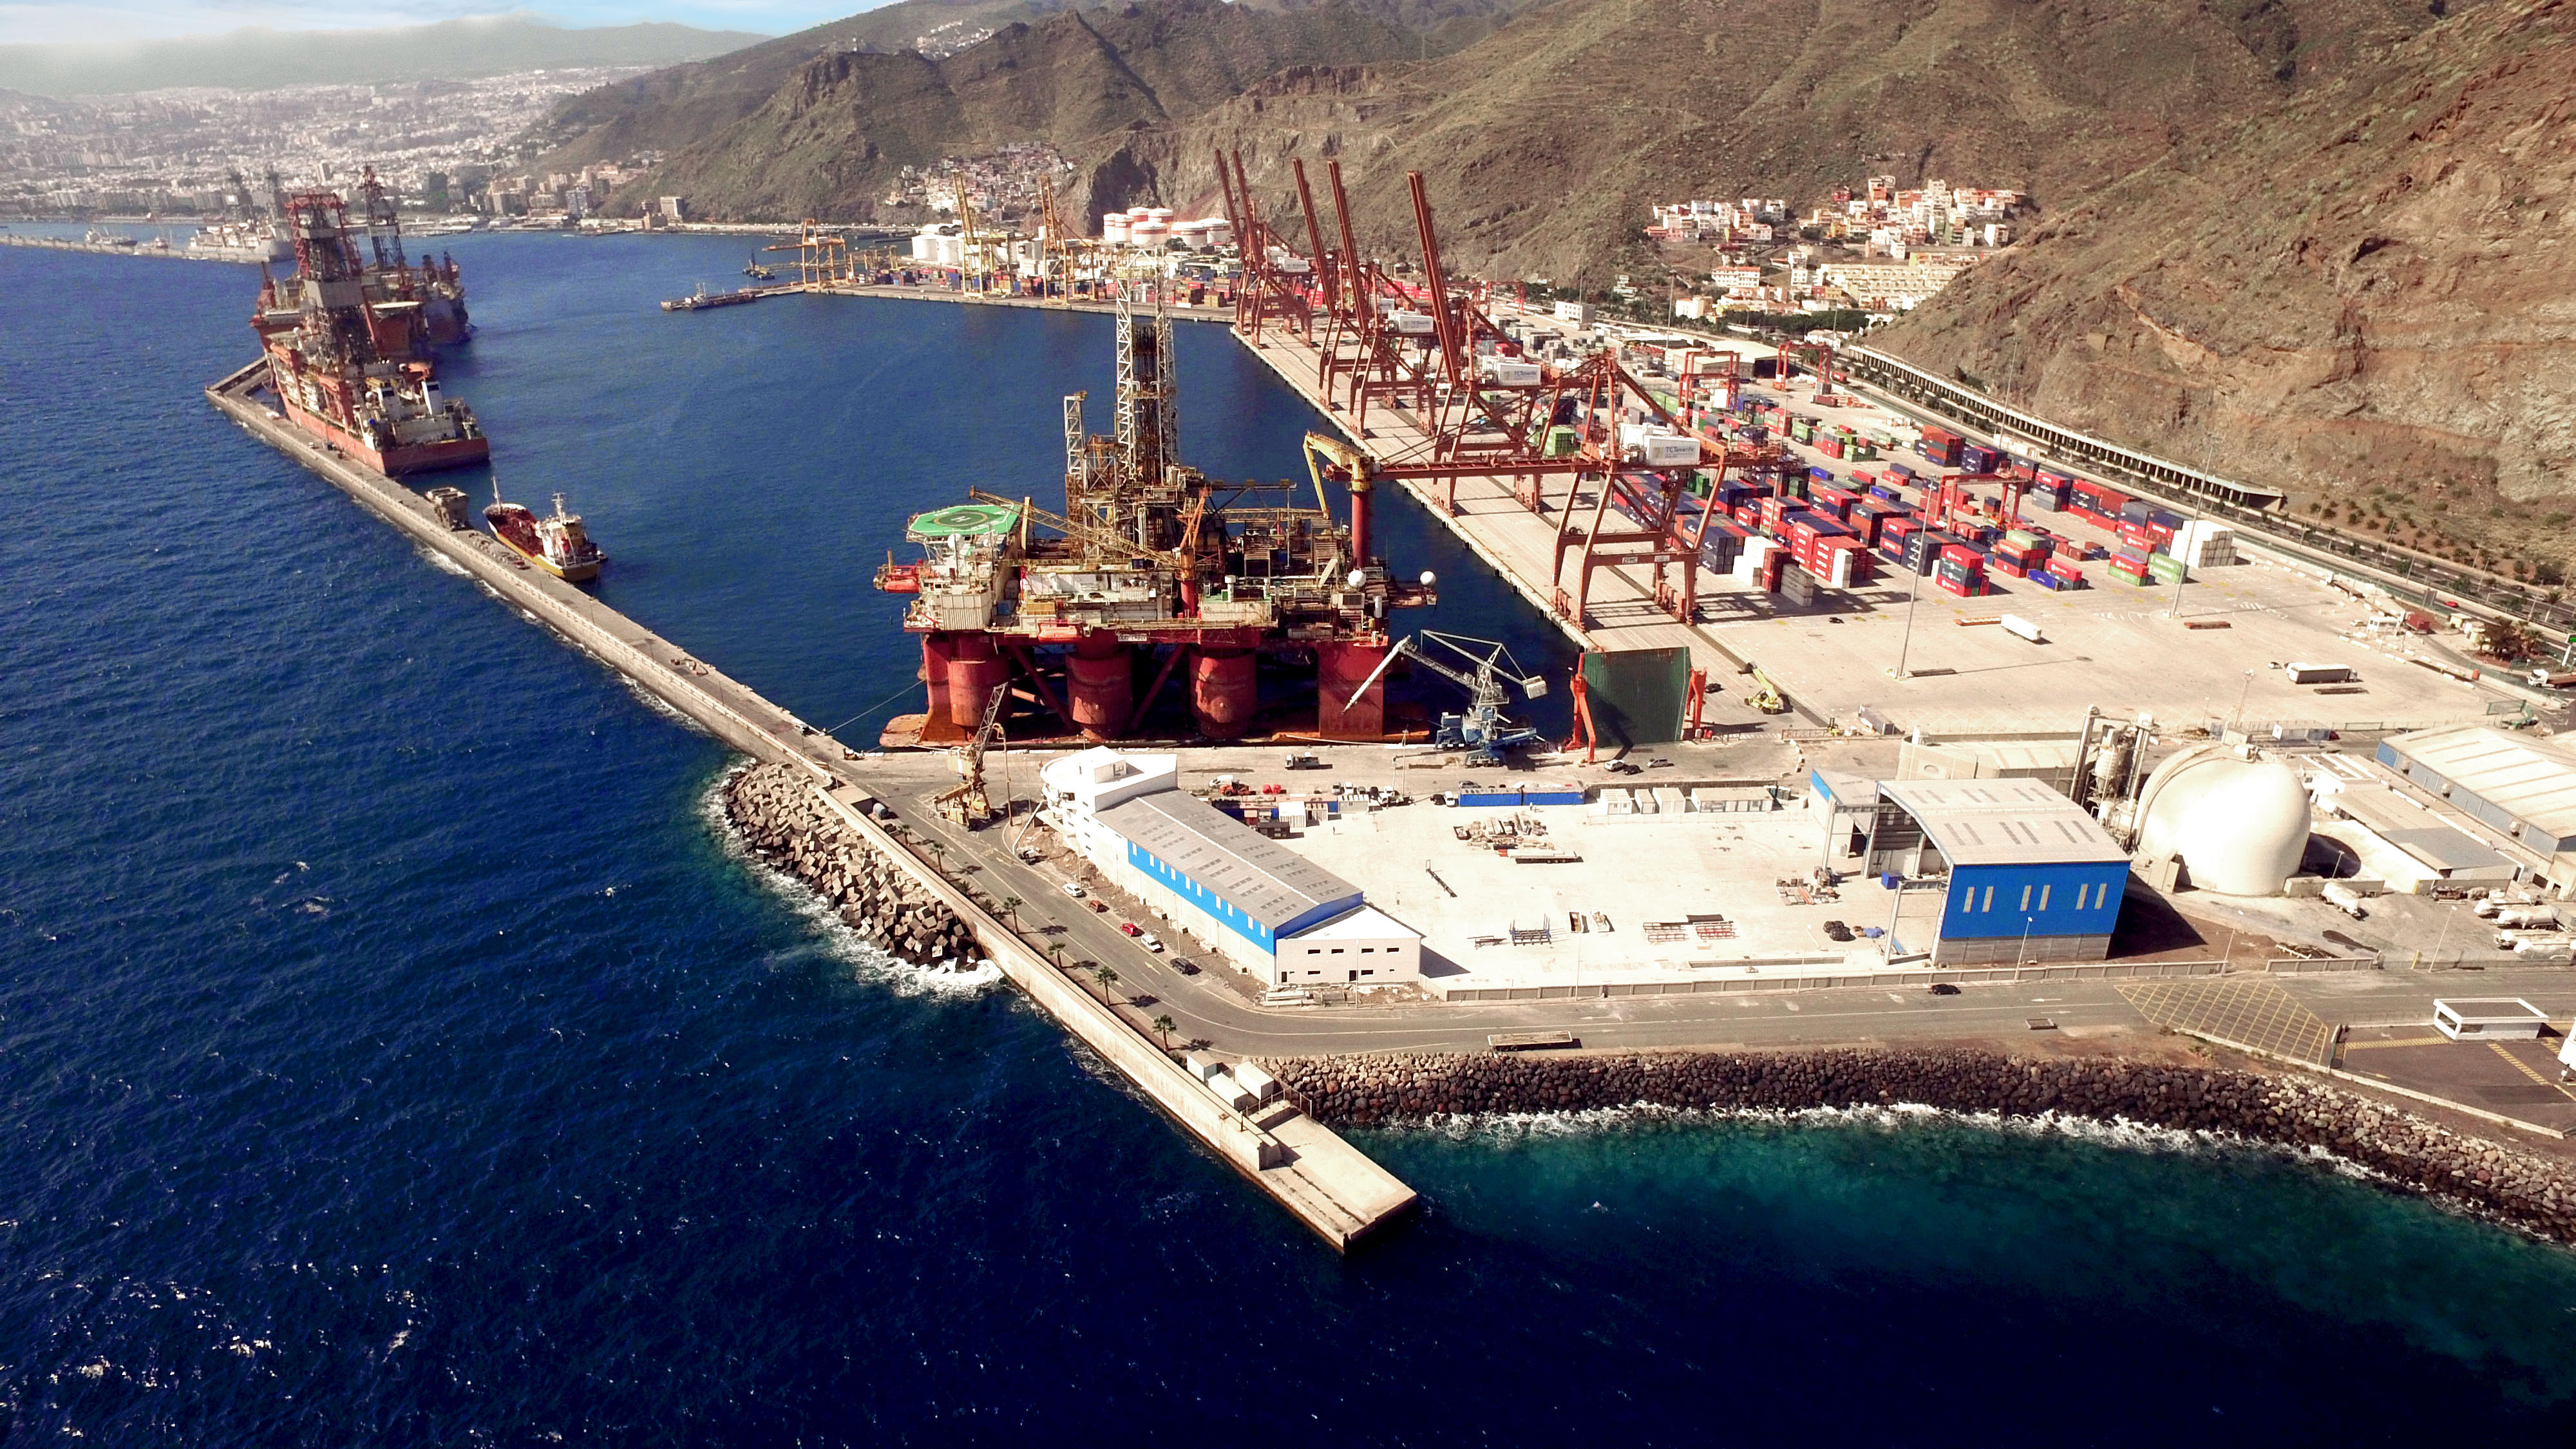 Hidramar Tenerife Shipyard - SHIPYARD